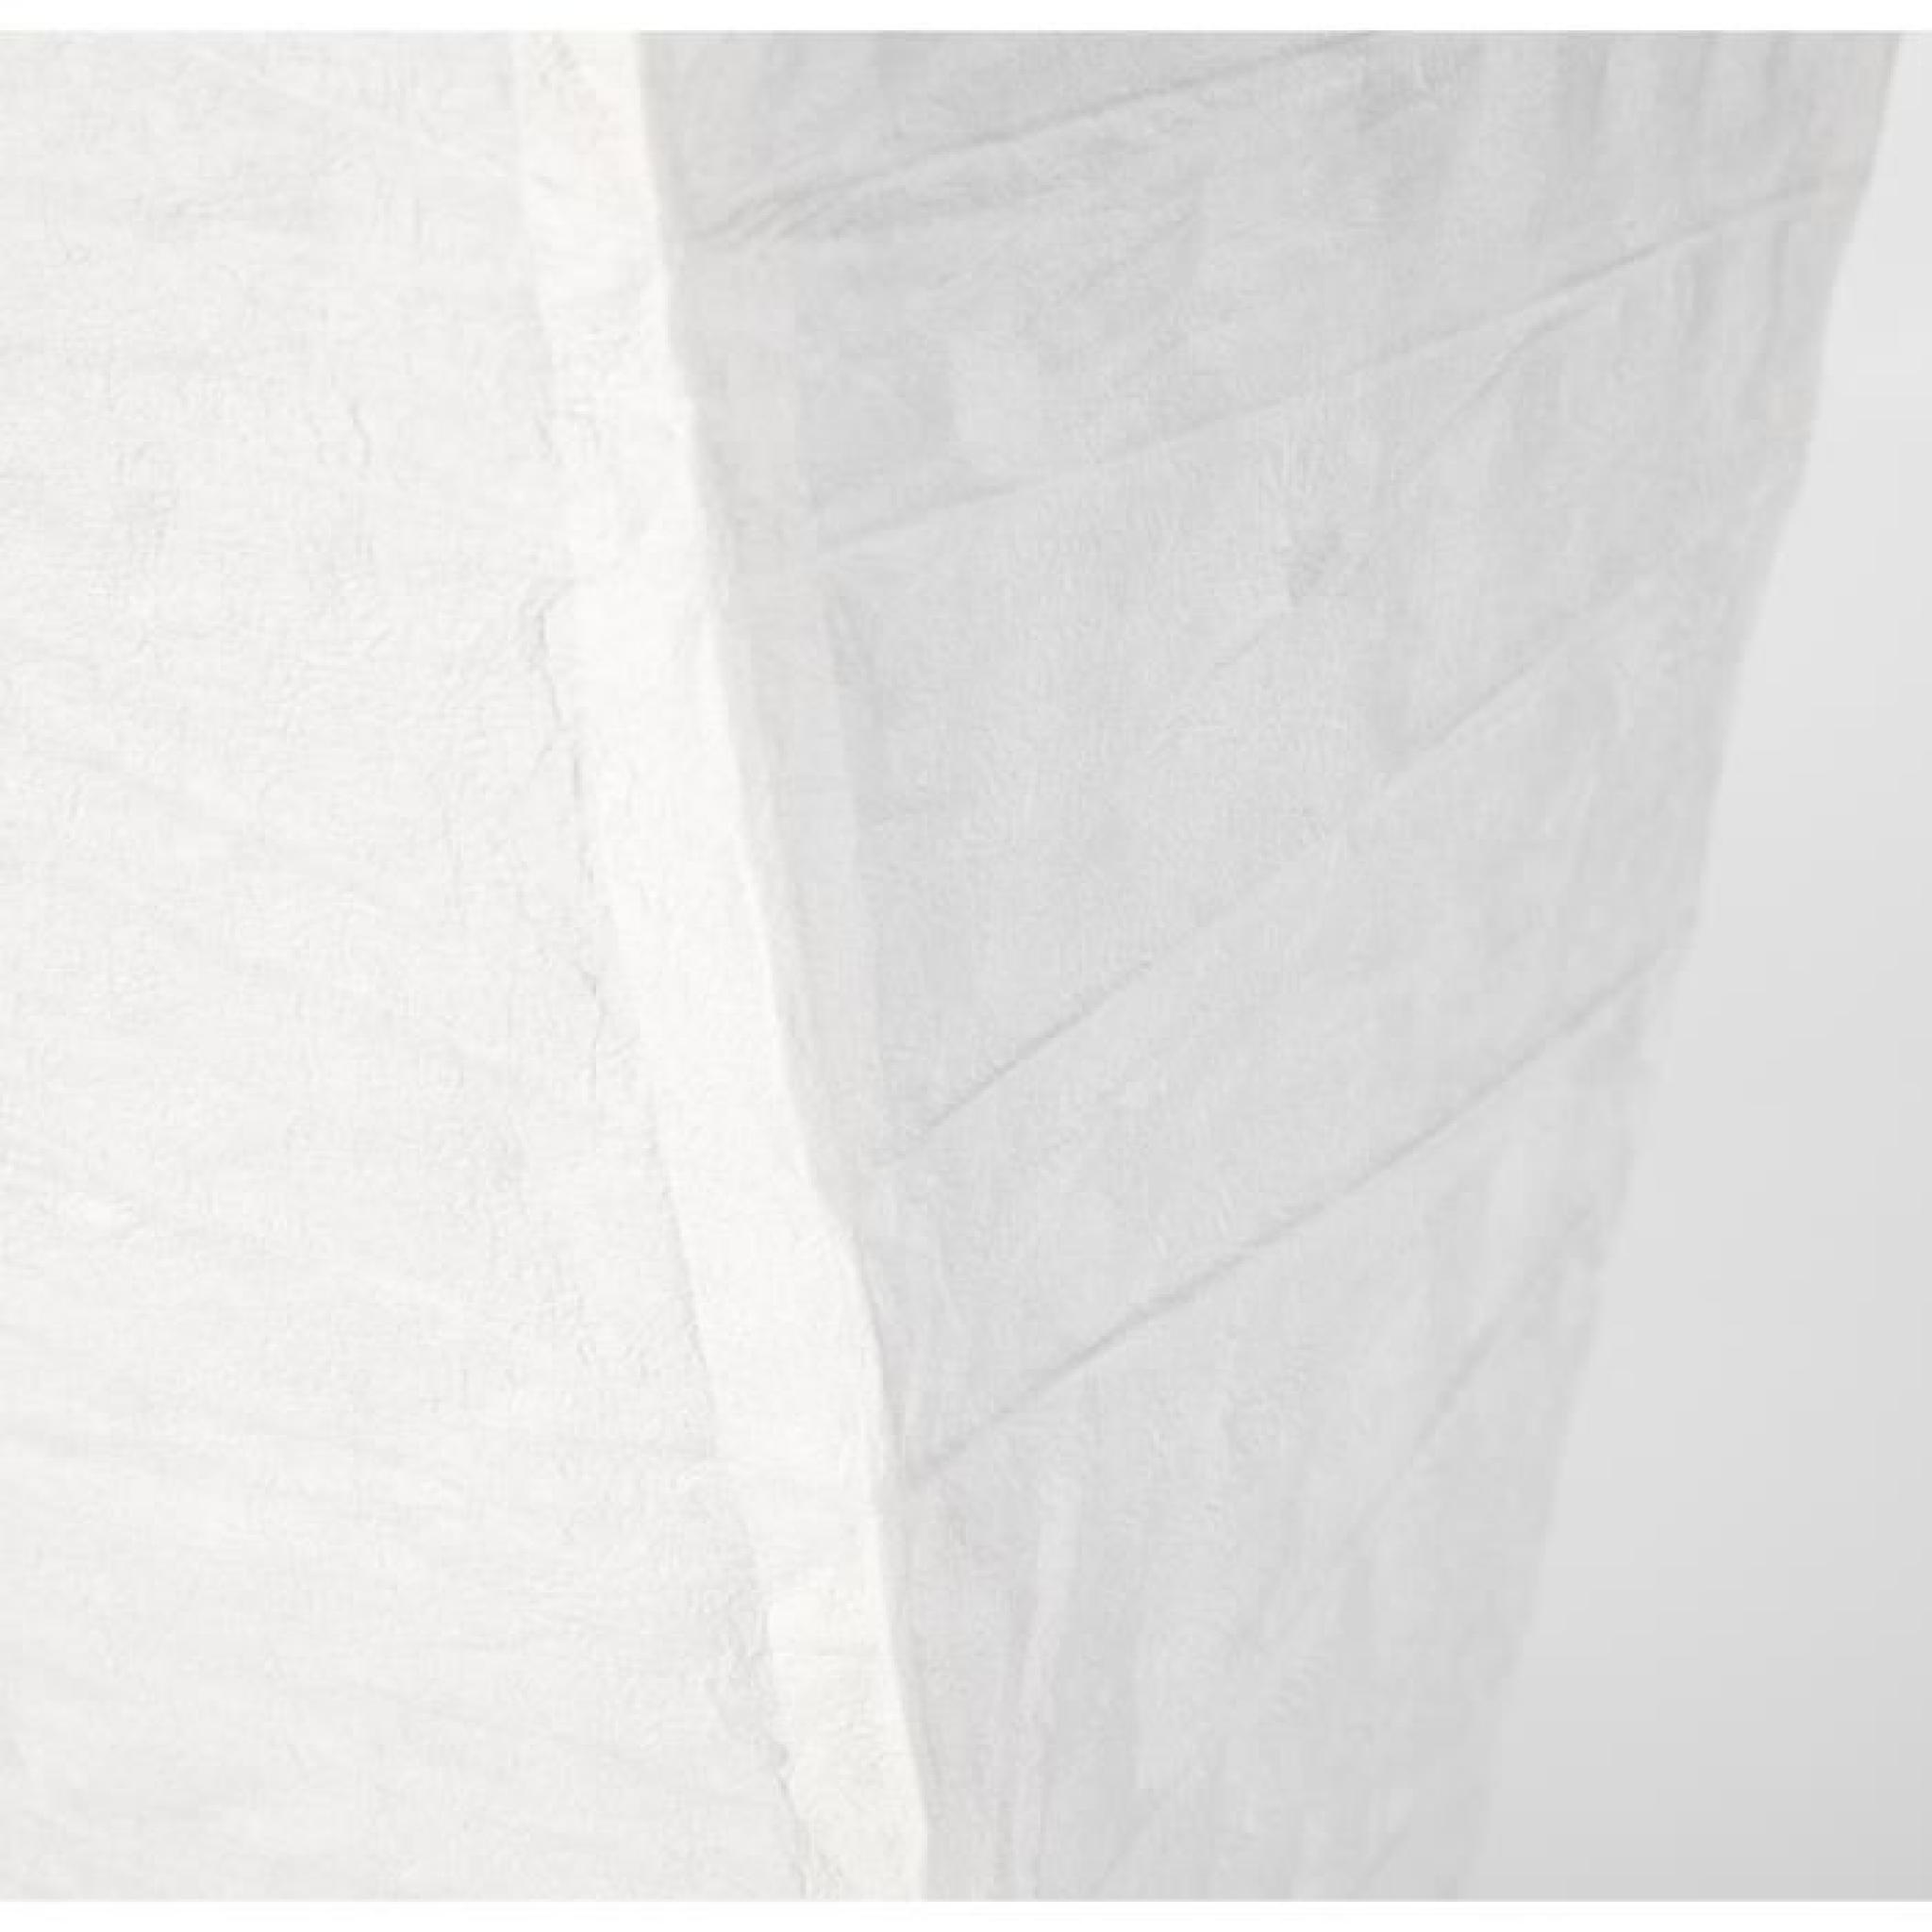 Lampadaire papier de riz blanc - Hauteur 130cm pas cher